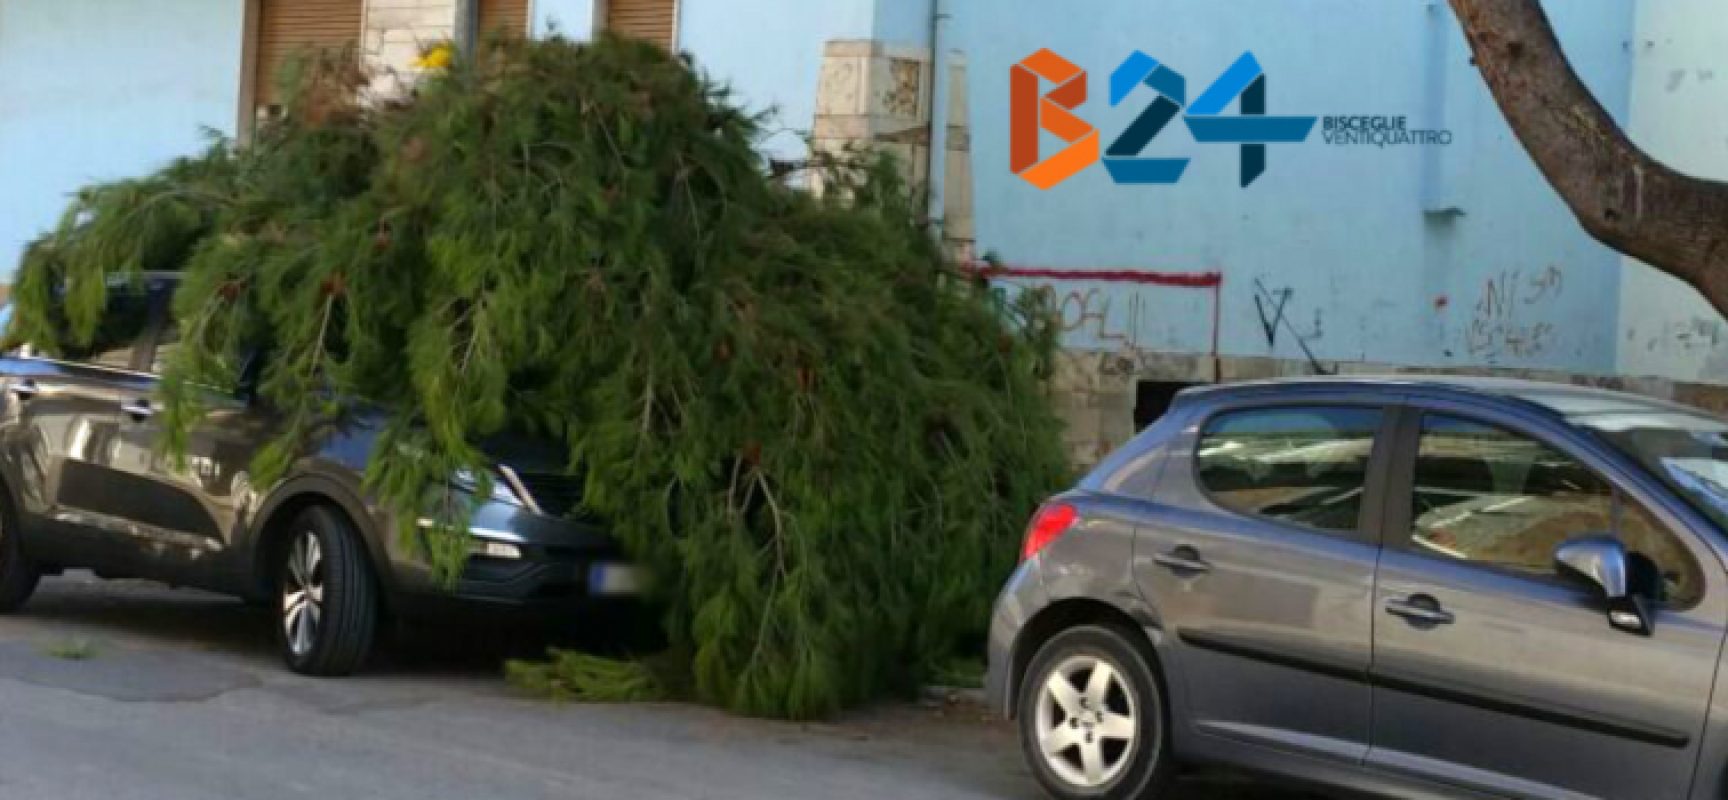 Grosso ramo di pino cade su autovettura in via Pascoli, nessun ferito / FOTO